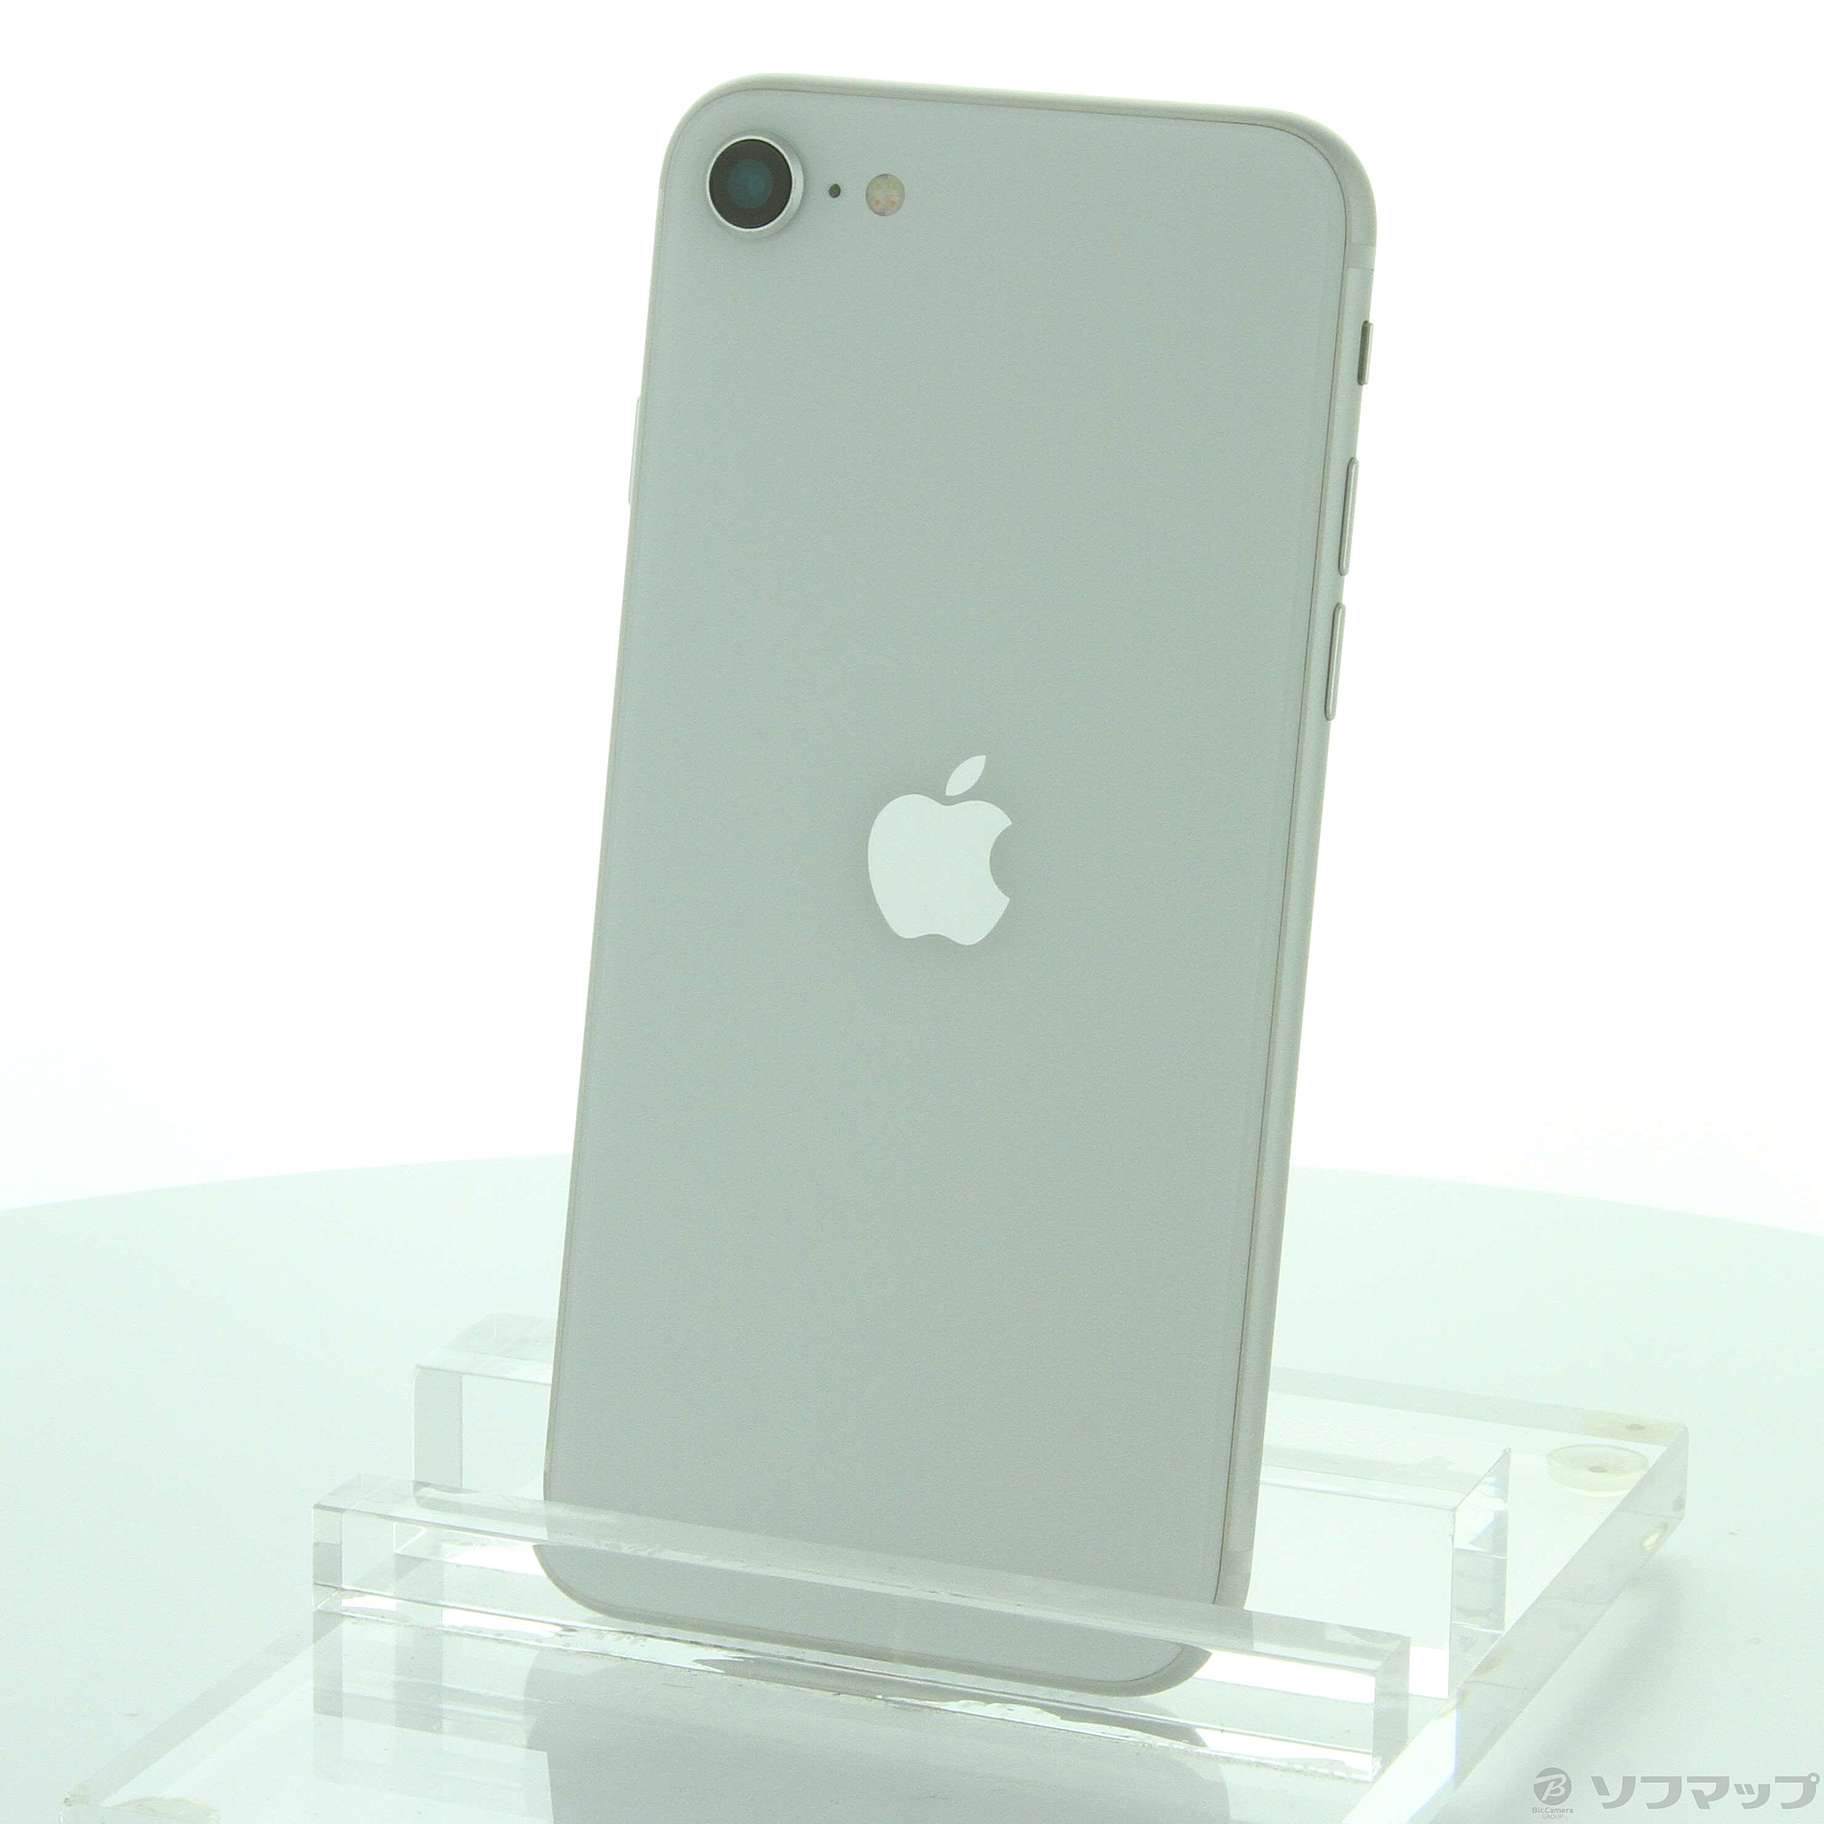 アップル iPhoneSE 第2世代 64GB  ホワイト softbank